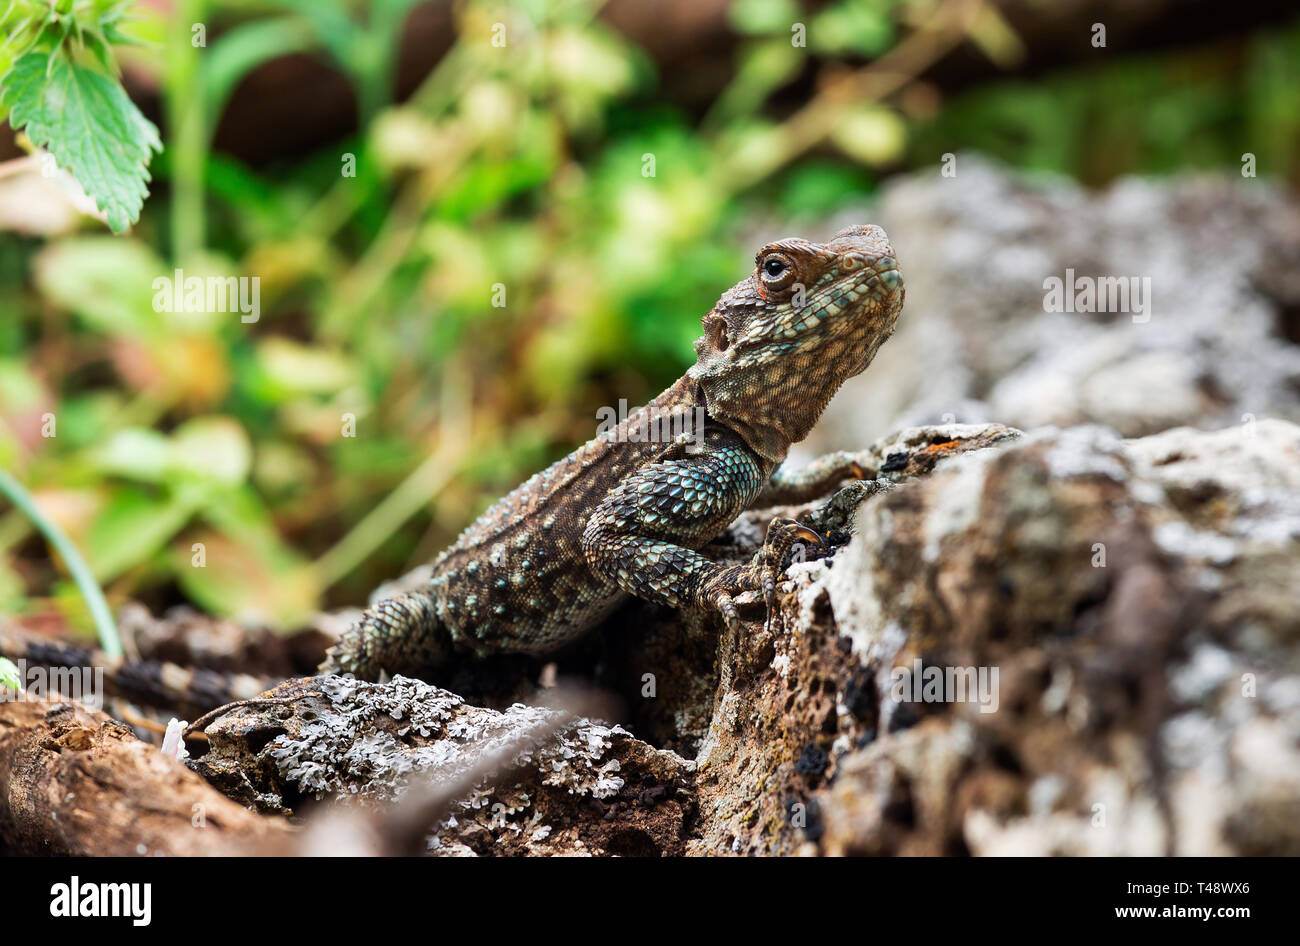 beautiful lizard on stone close up Stock Photo